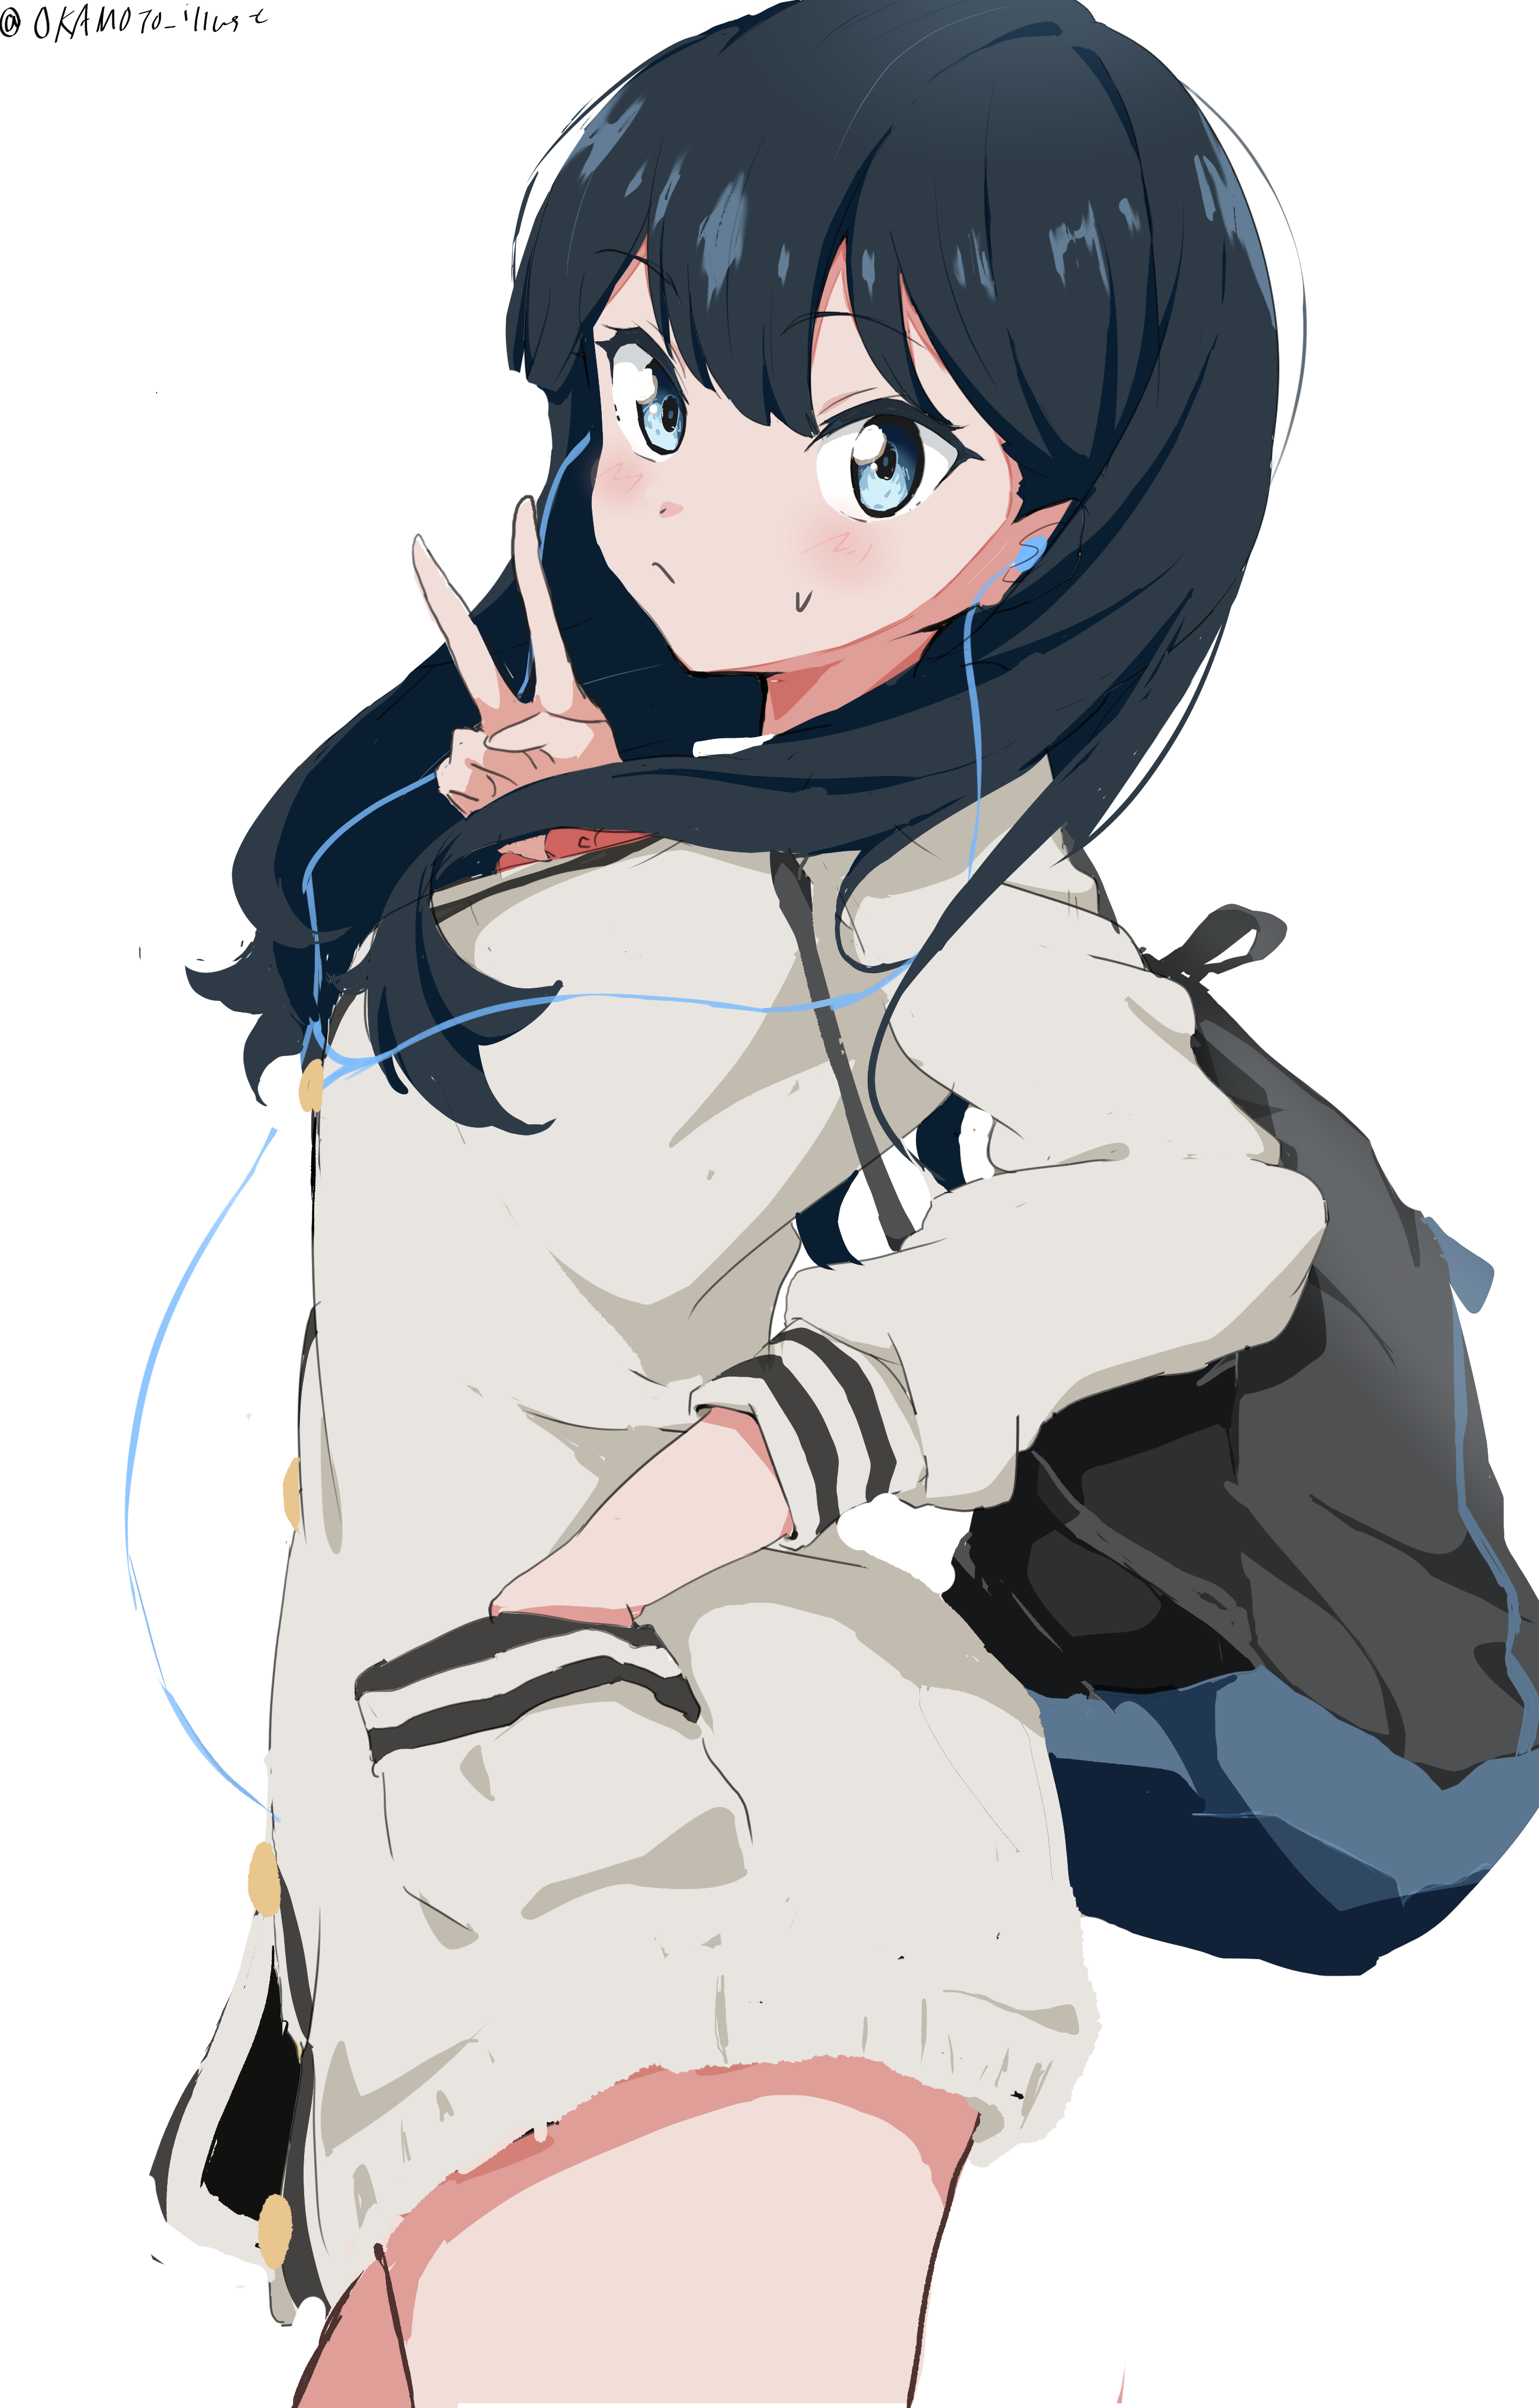 Anime Anime Girls SSSS GRiDMAN Takarada Rikka Long Hair Black Hair Solo Artwork Digital Art Fan Art  2616x4093